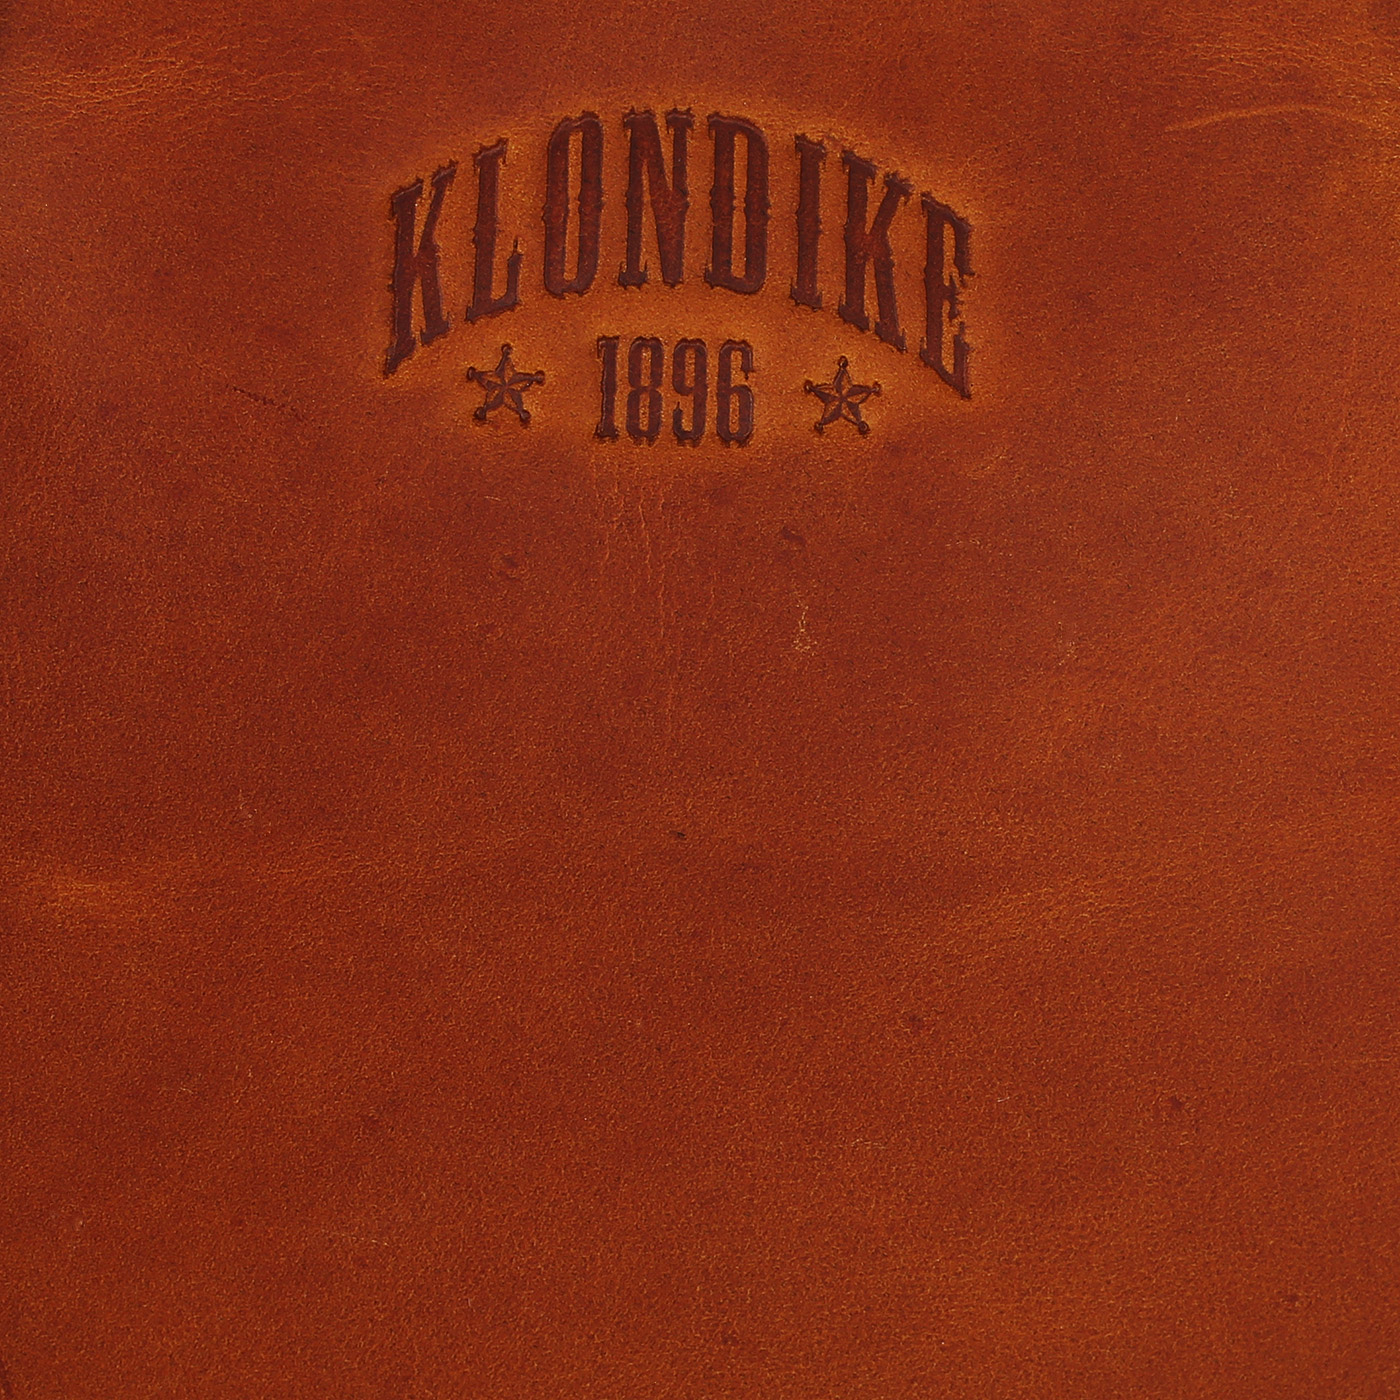 Деловая кожаная сумка Klondike 1896 Digger